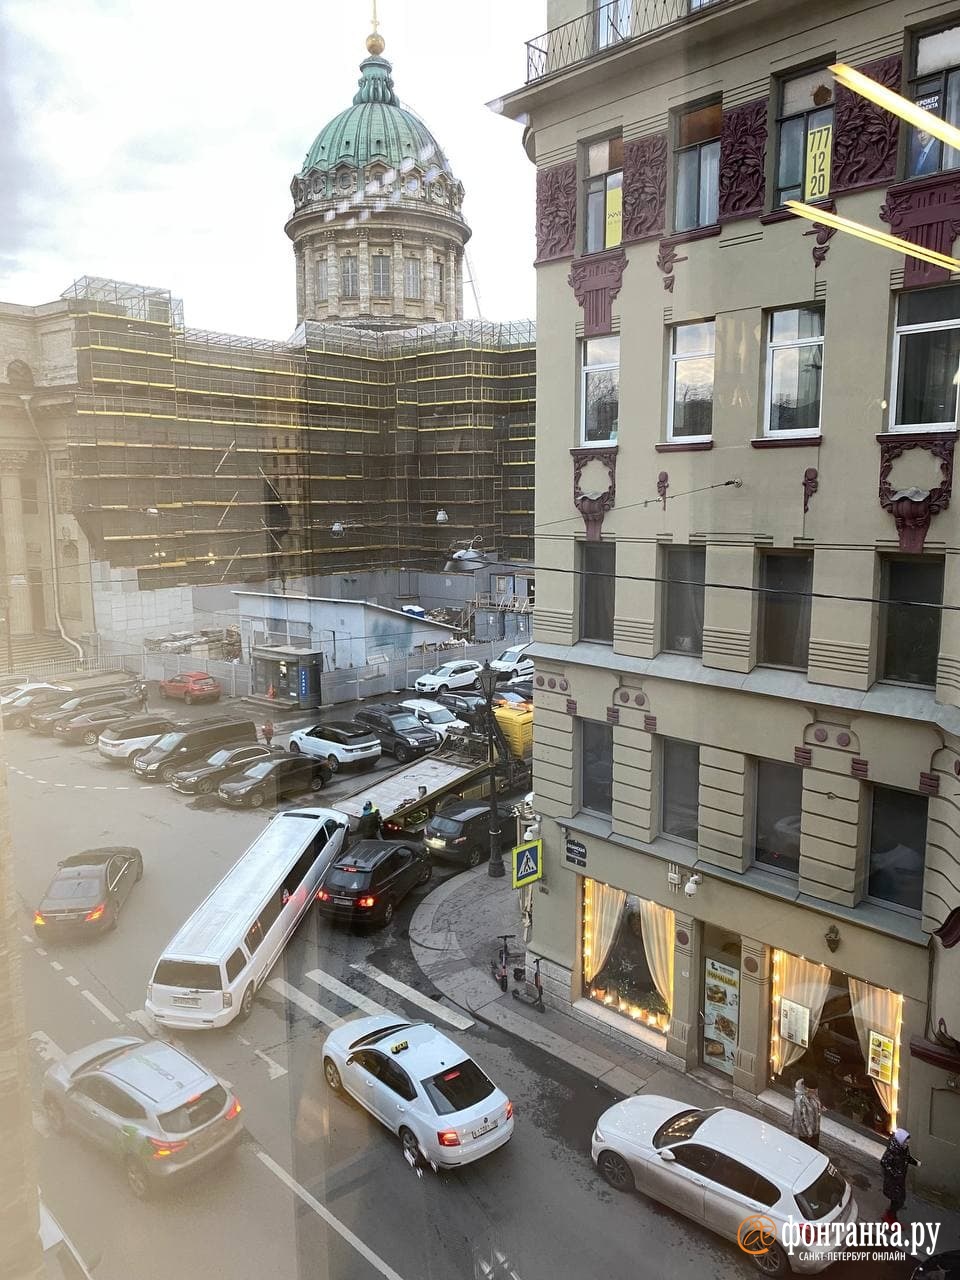 Белый лимузин собрал пробку в центре Петербурга. Его несамостоятельный отъезд обернулся перекрытием целой улицы